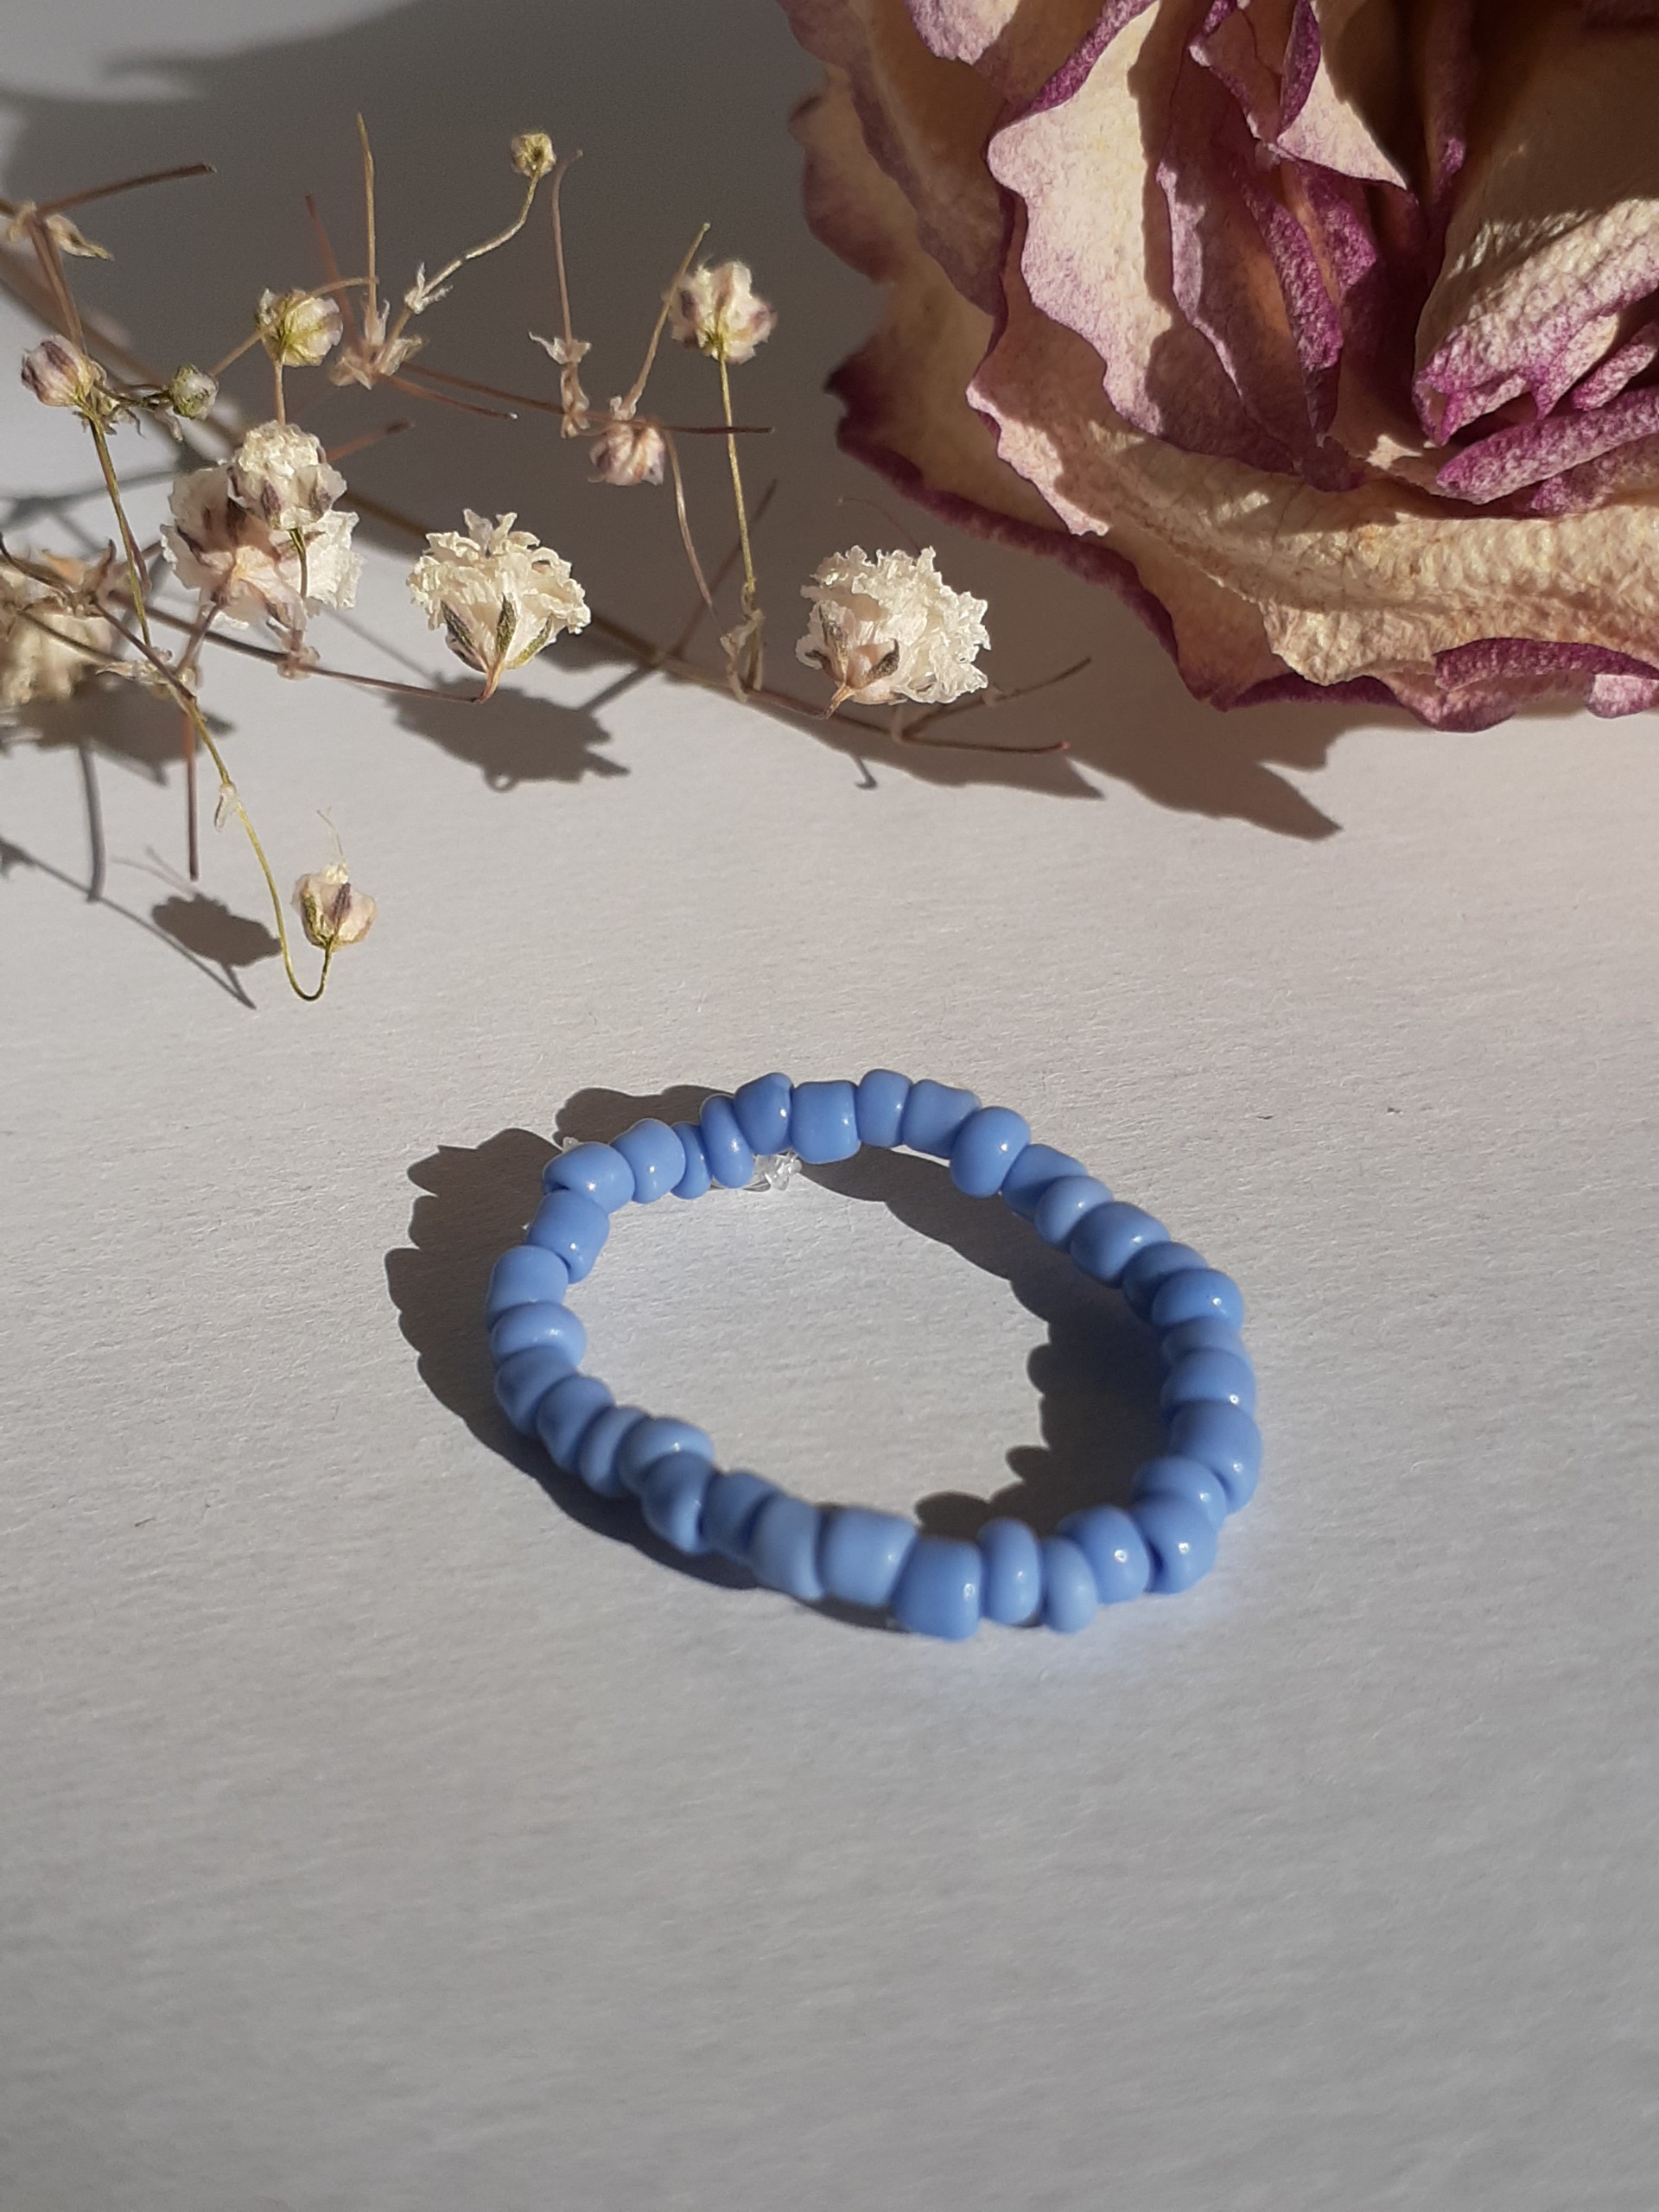 кольцо из бисера голубого цвета /кольцо на палец/ разные цветв в магазине«honey.bunny_shops» на Ламбада-маркете